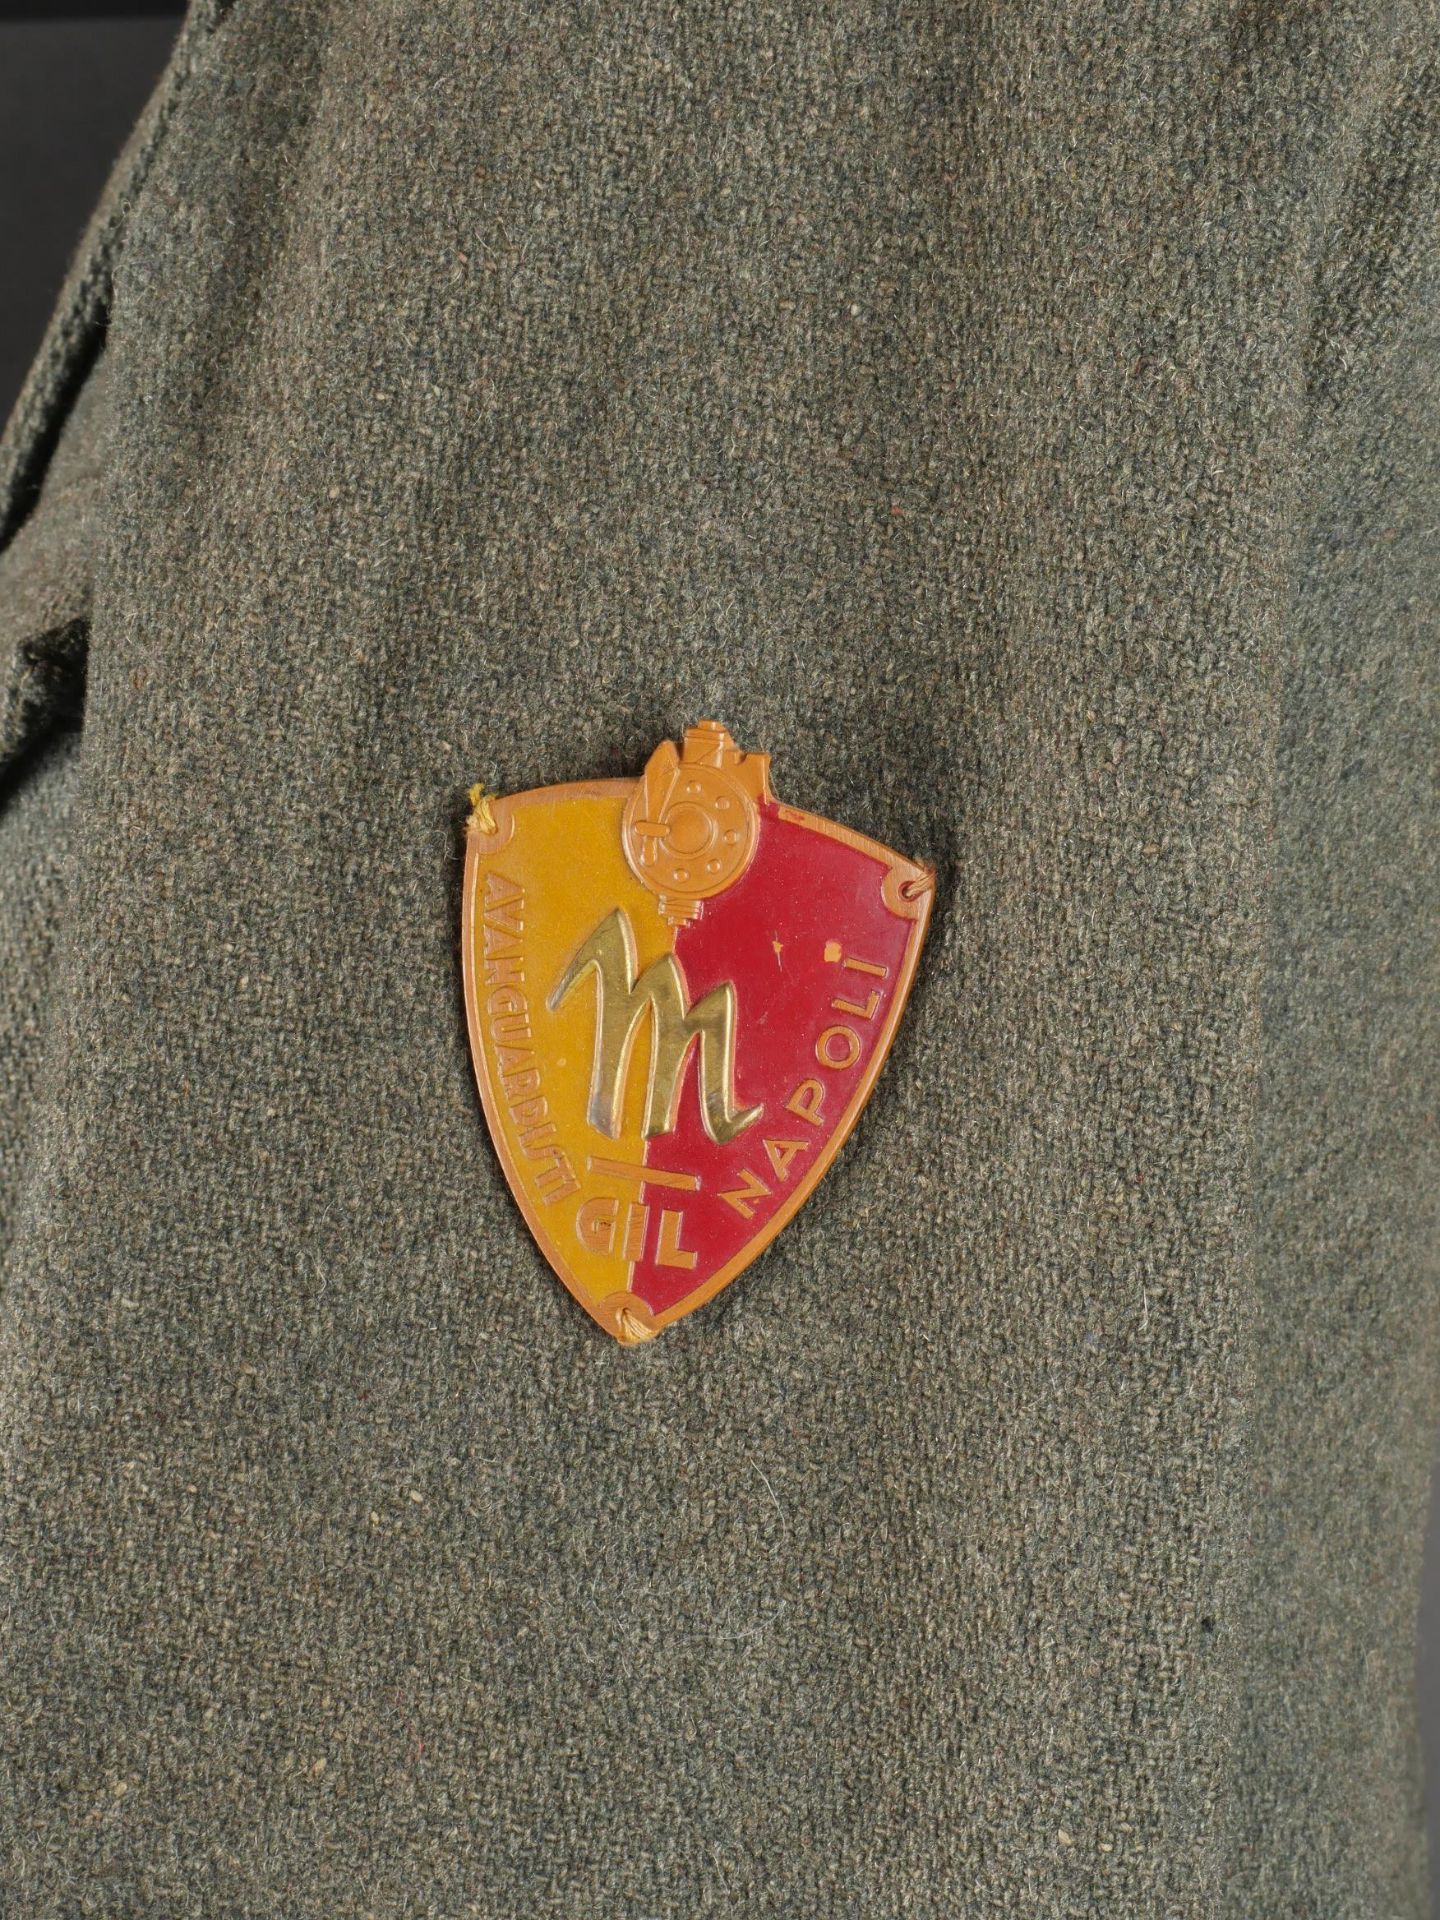 Vareuse des GIL de Giovanni Dorio. GIL jacket by Giovanni Dorio. - Image 12 of 19